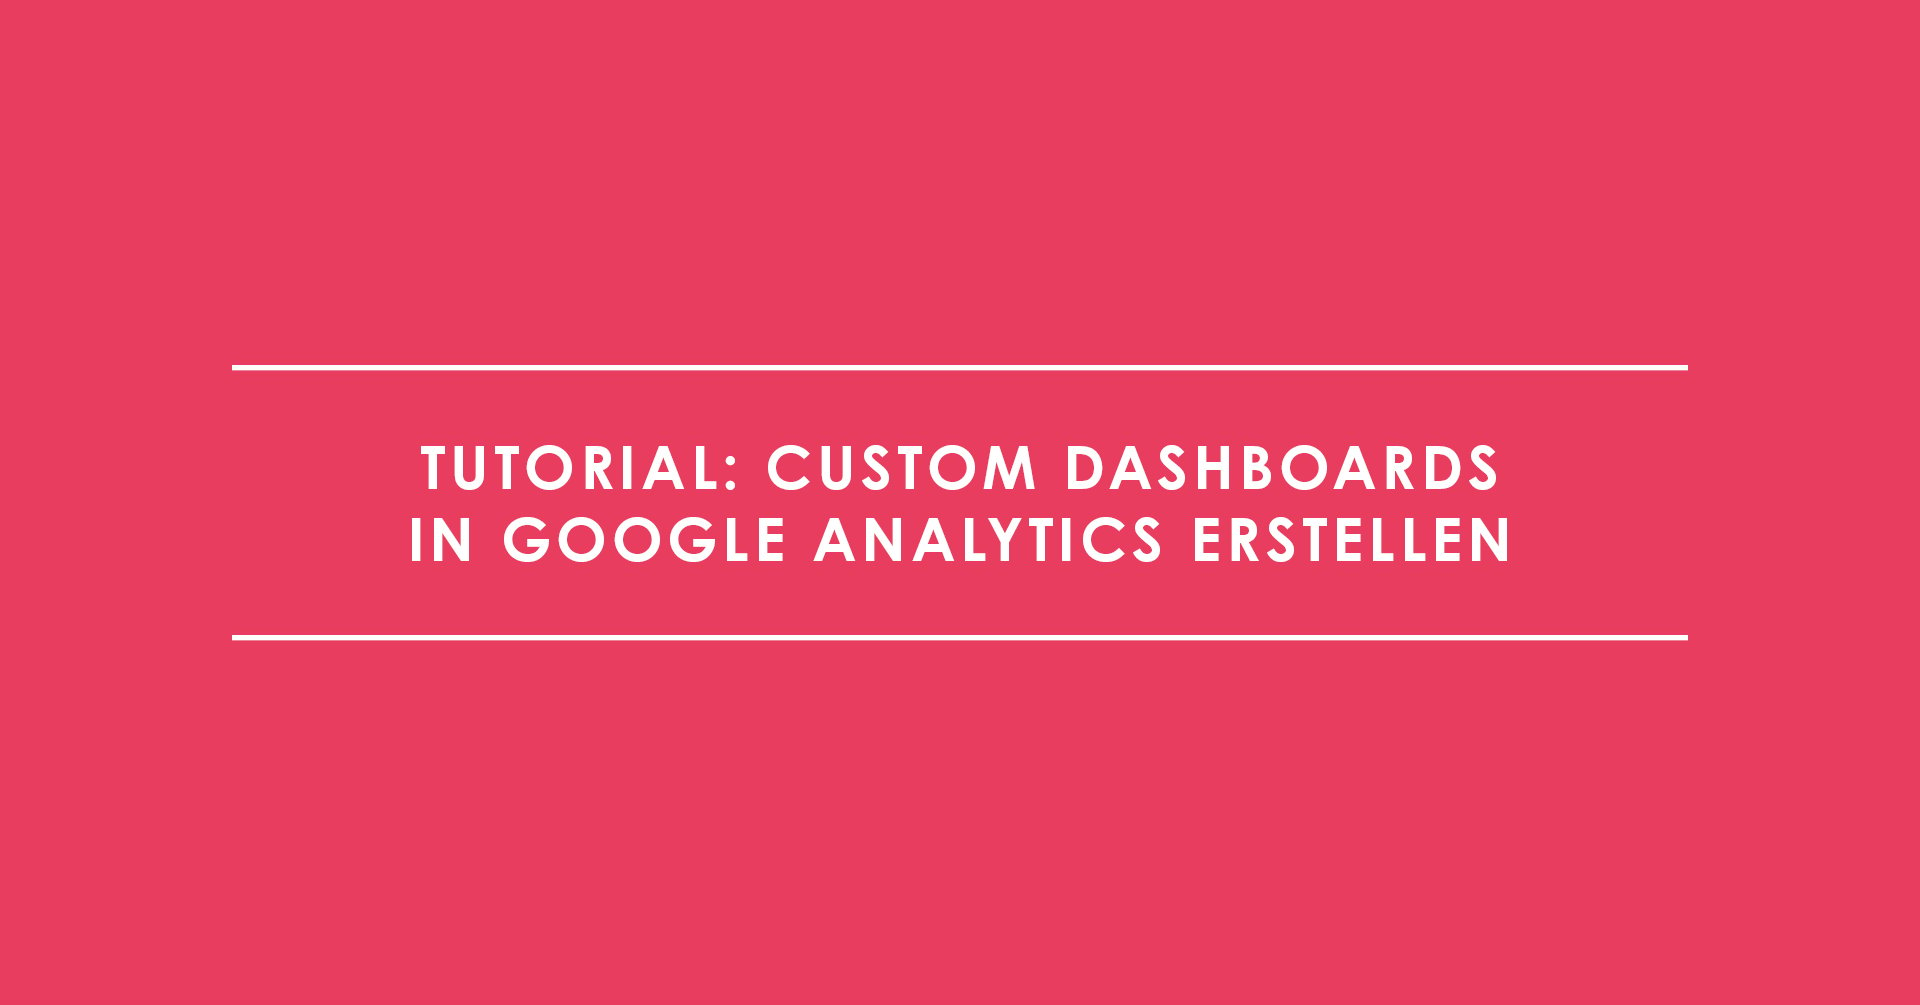 Tutorial: Custom Dashboards in Google Analytics erstellen